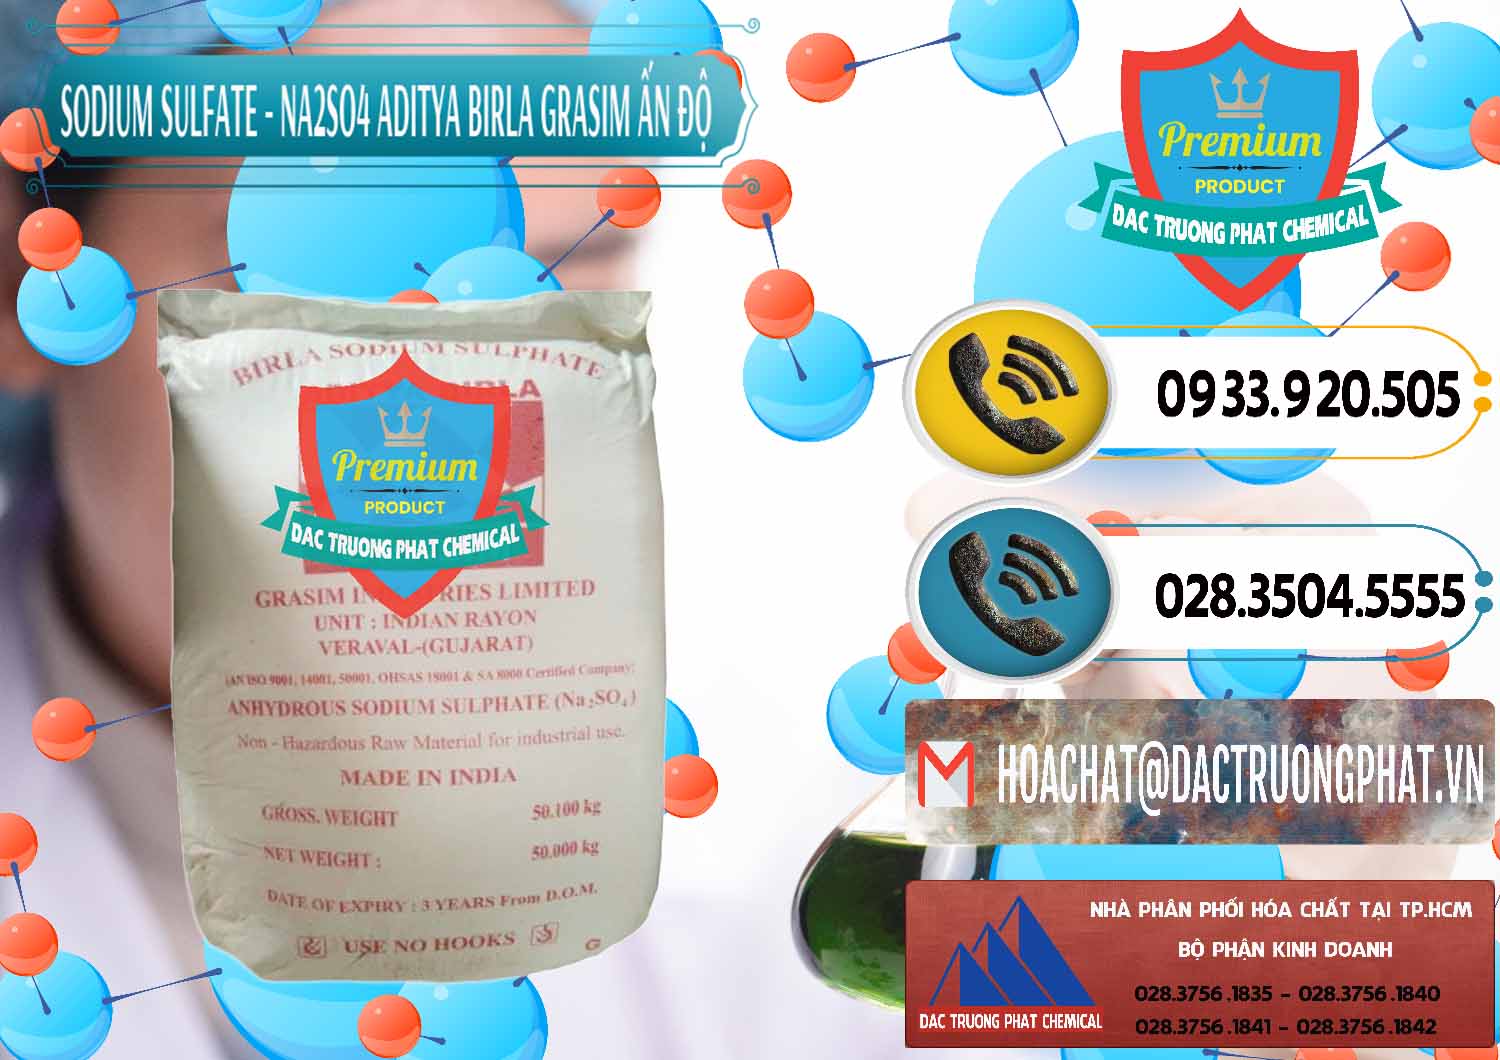 Công ty phân phối - bán Sodium Sulphate - Muối Sunfat Na2SO4 Grasim Ấn Độ India - 0356 - Nhập khẩu & phân phối hóa chất tại TP.HCM - hoachatdetnhuom.vn